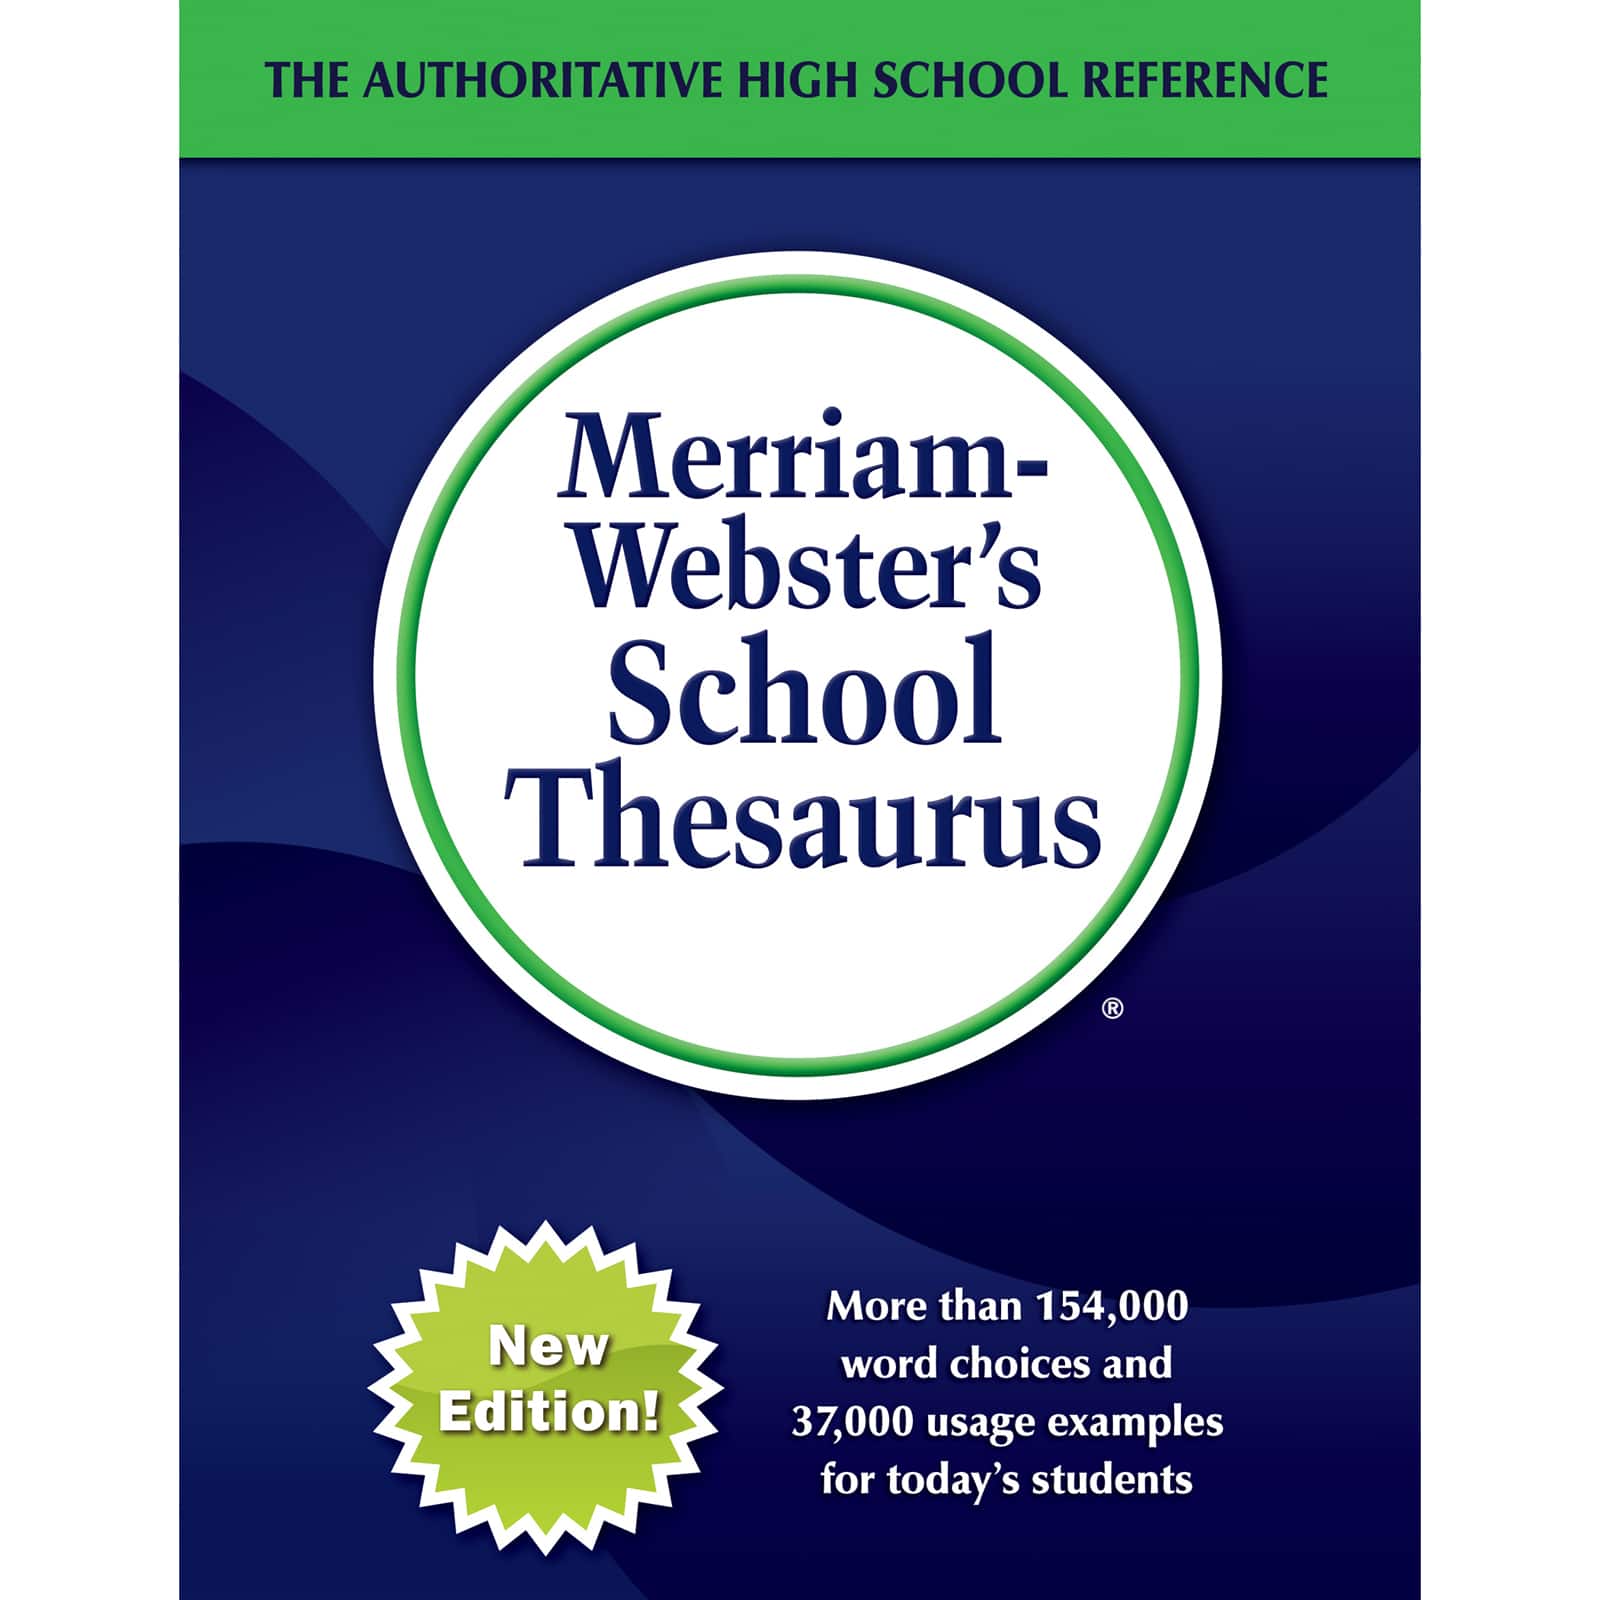 Merriam-Webster School Thesaurus